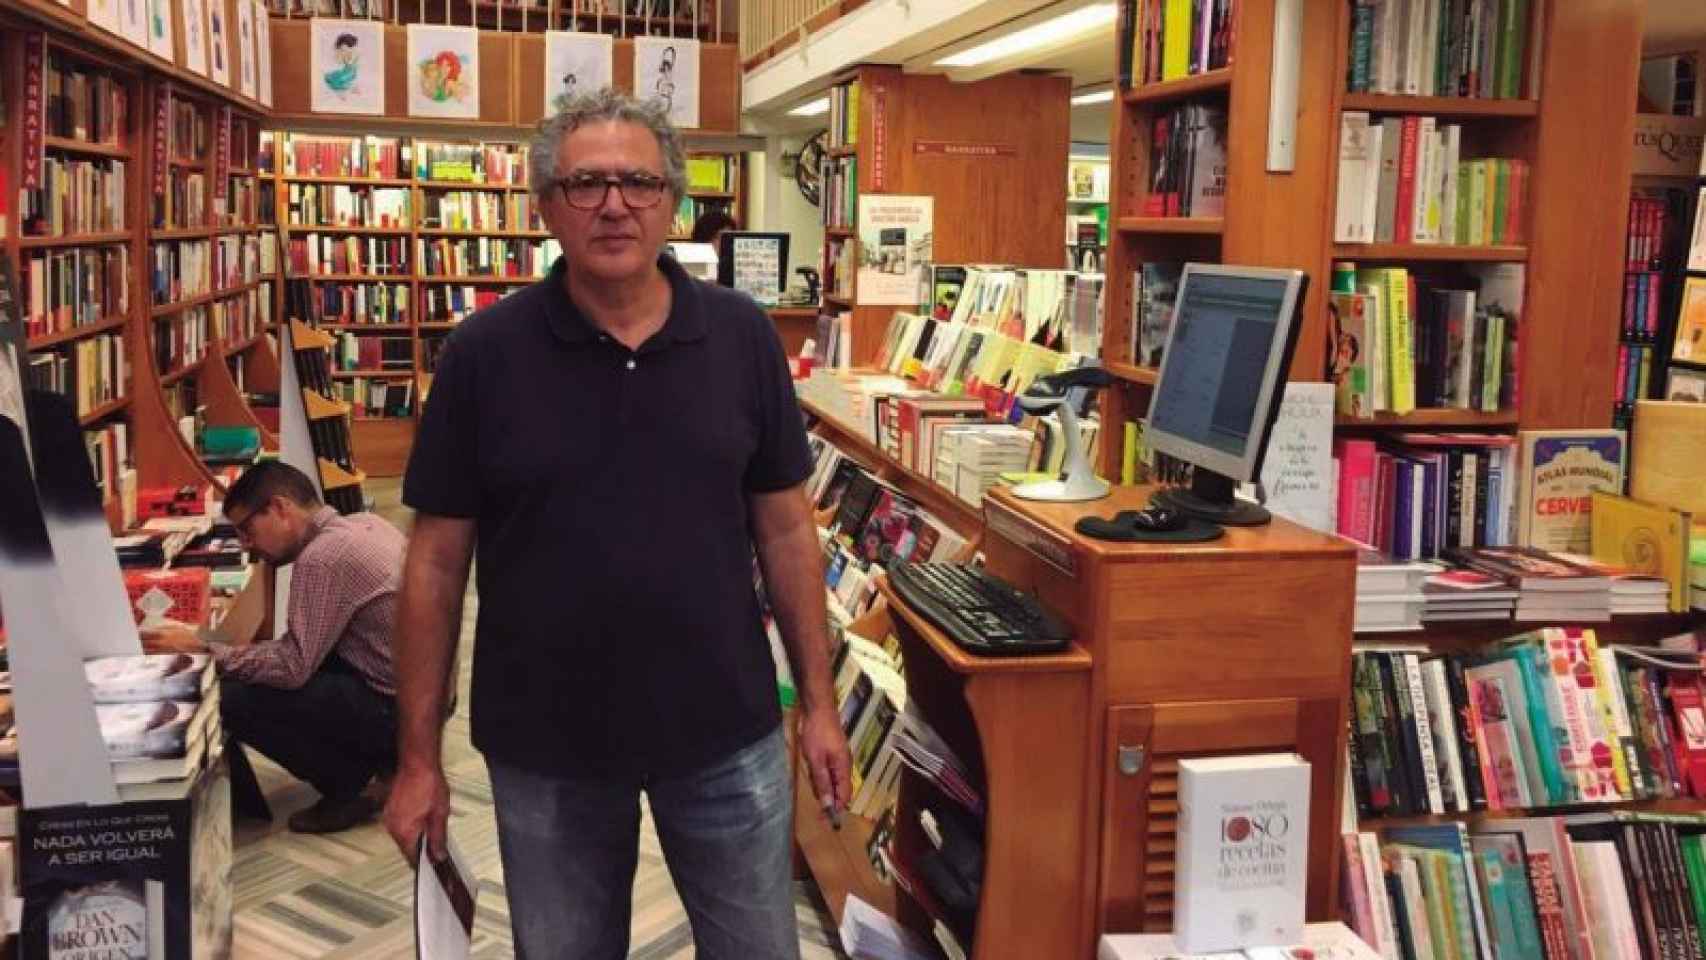 El librero Juan Manuel Cruz, en una imagen.